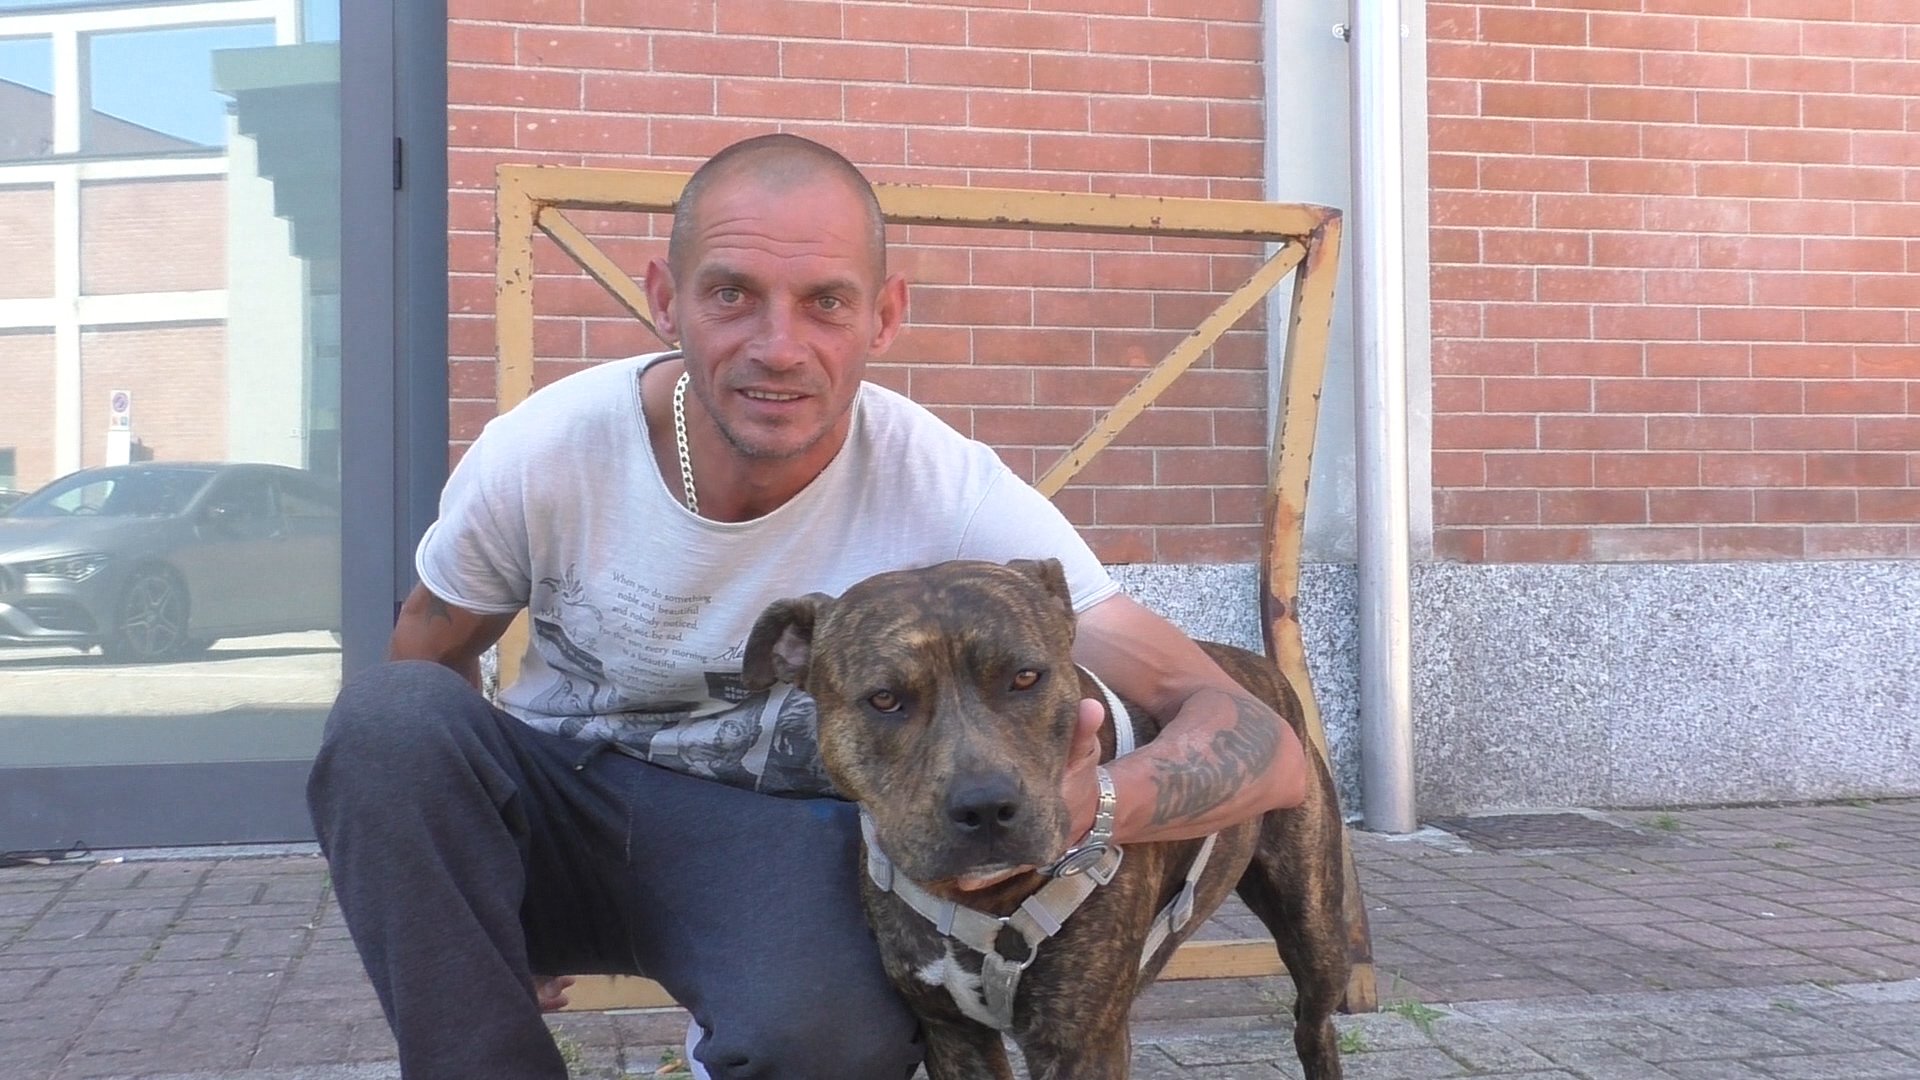 Eugenio e il suo cane Spike da 6 mesi senza casa, tra sguardi di disprezzo ma anche tanta solidarietà